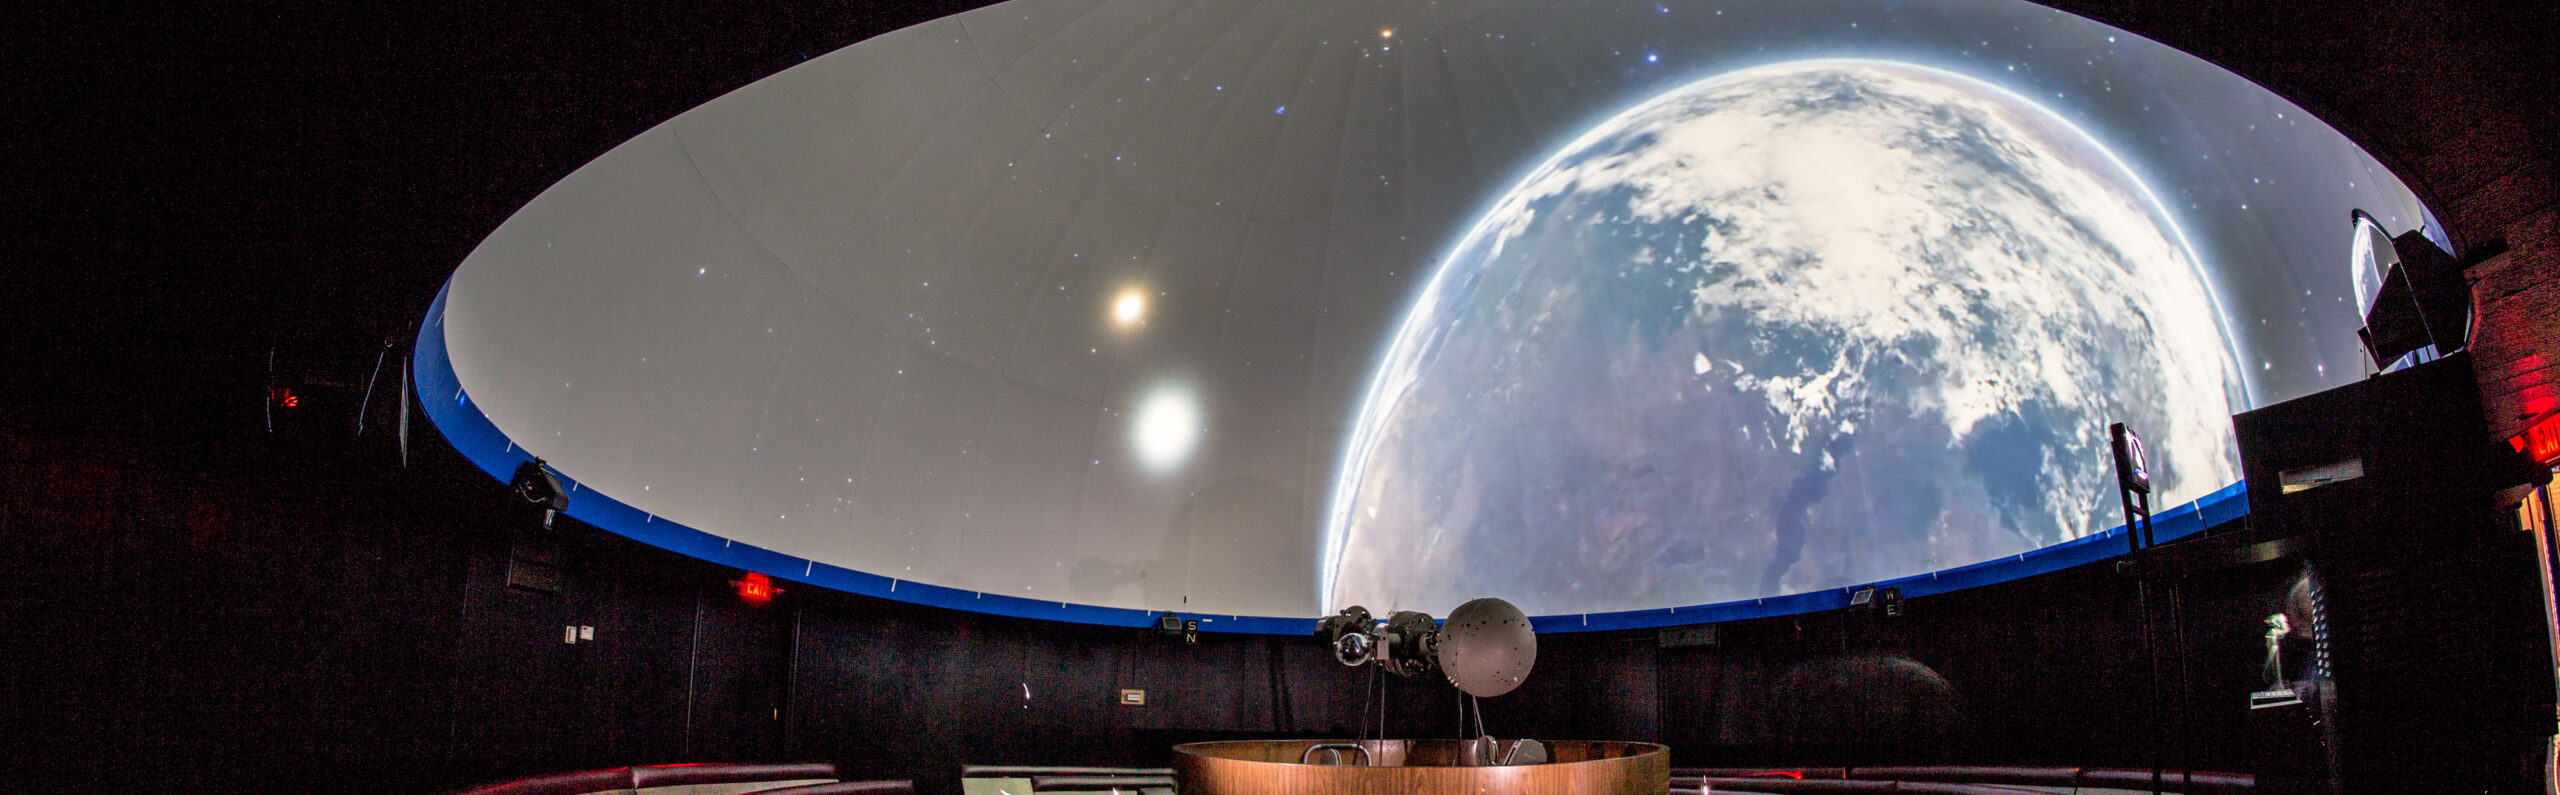 Treworgy Planetarium - Mystic Seaport Museum - Planetarium Show in CT